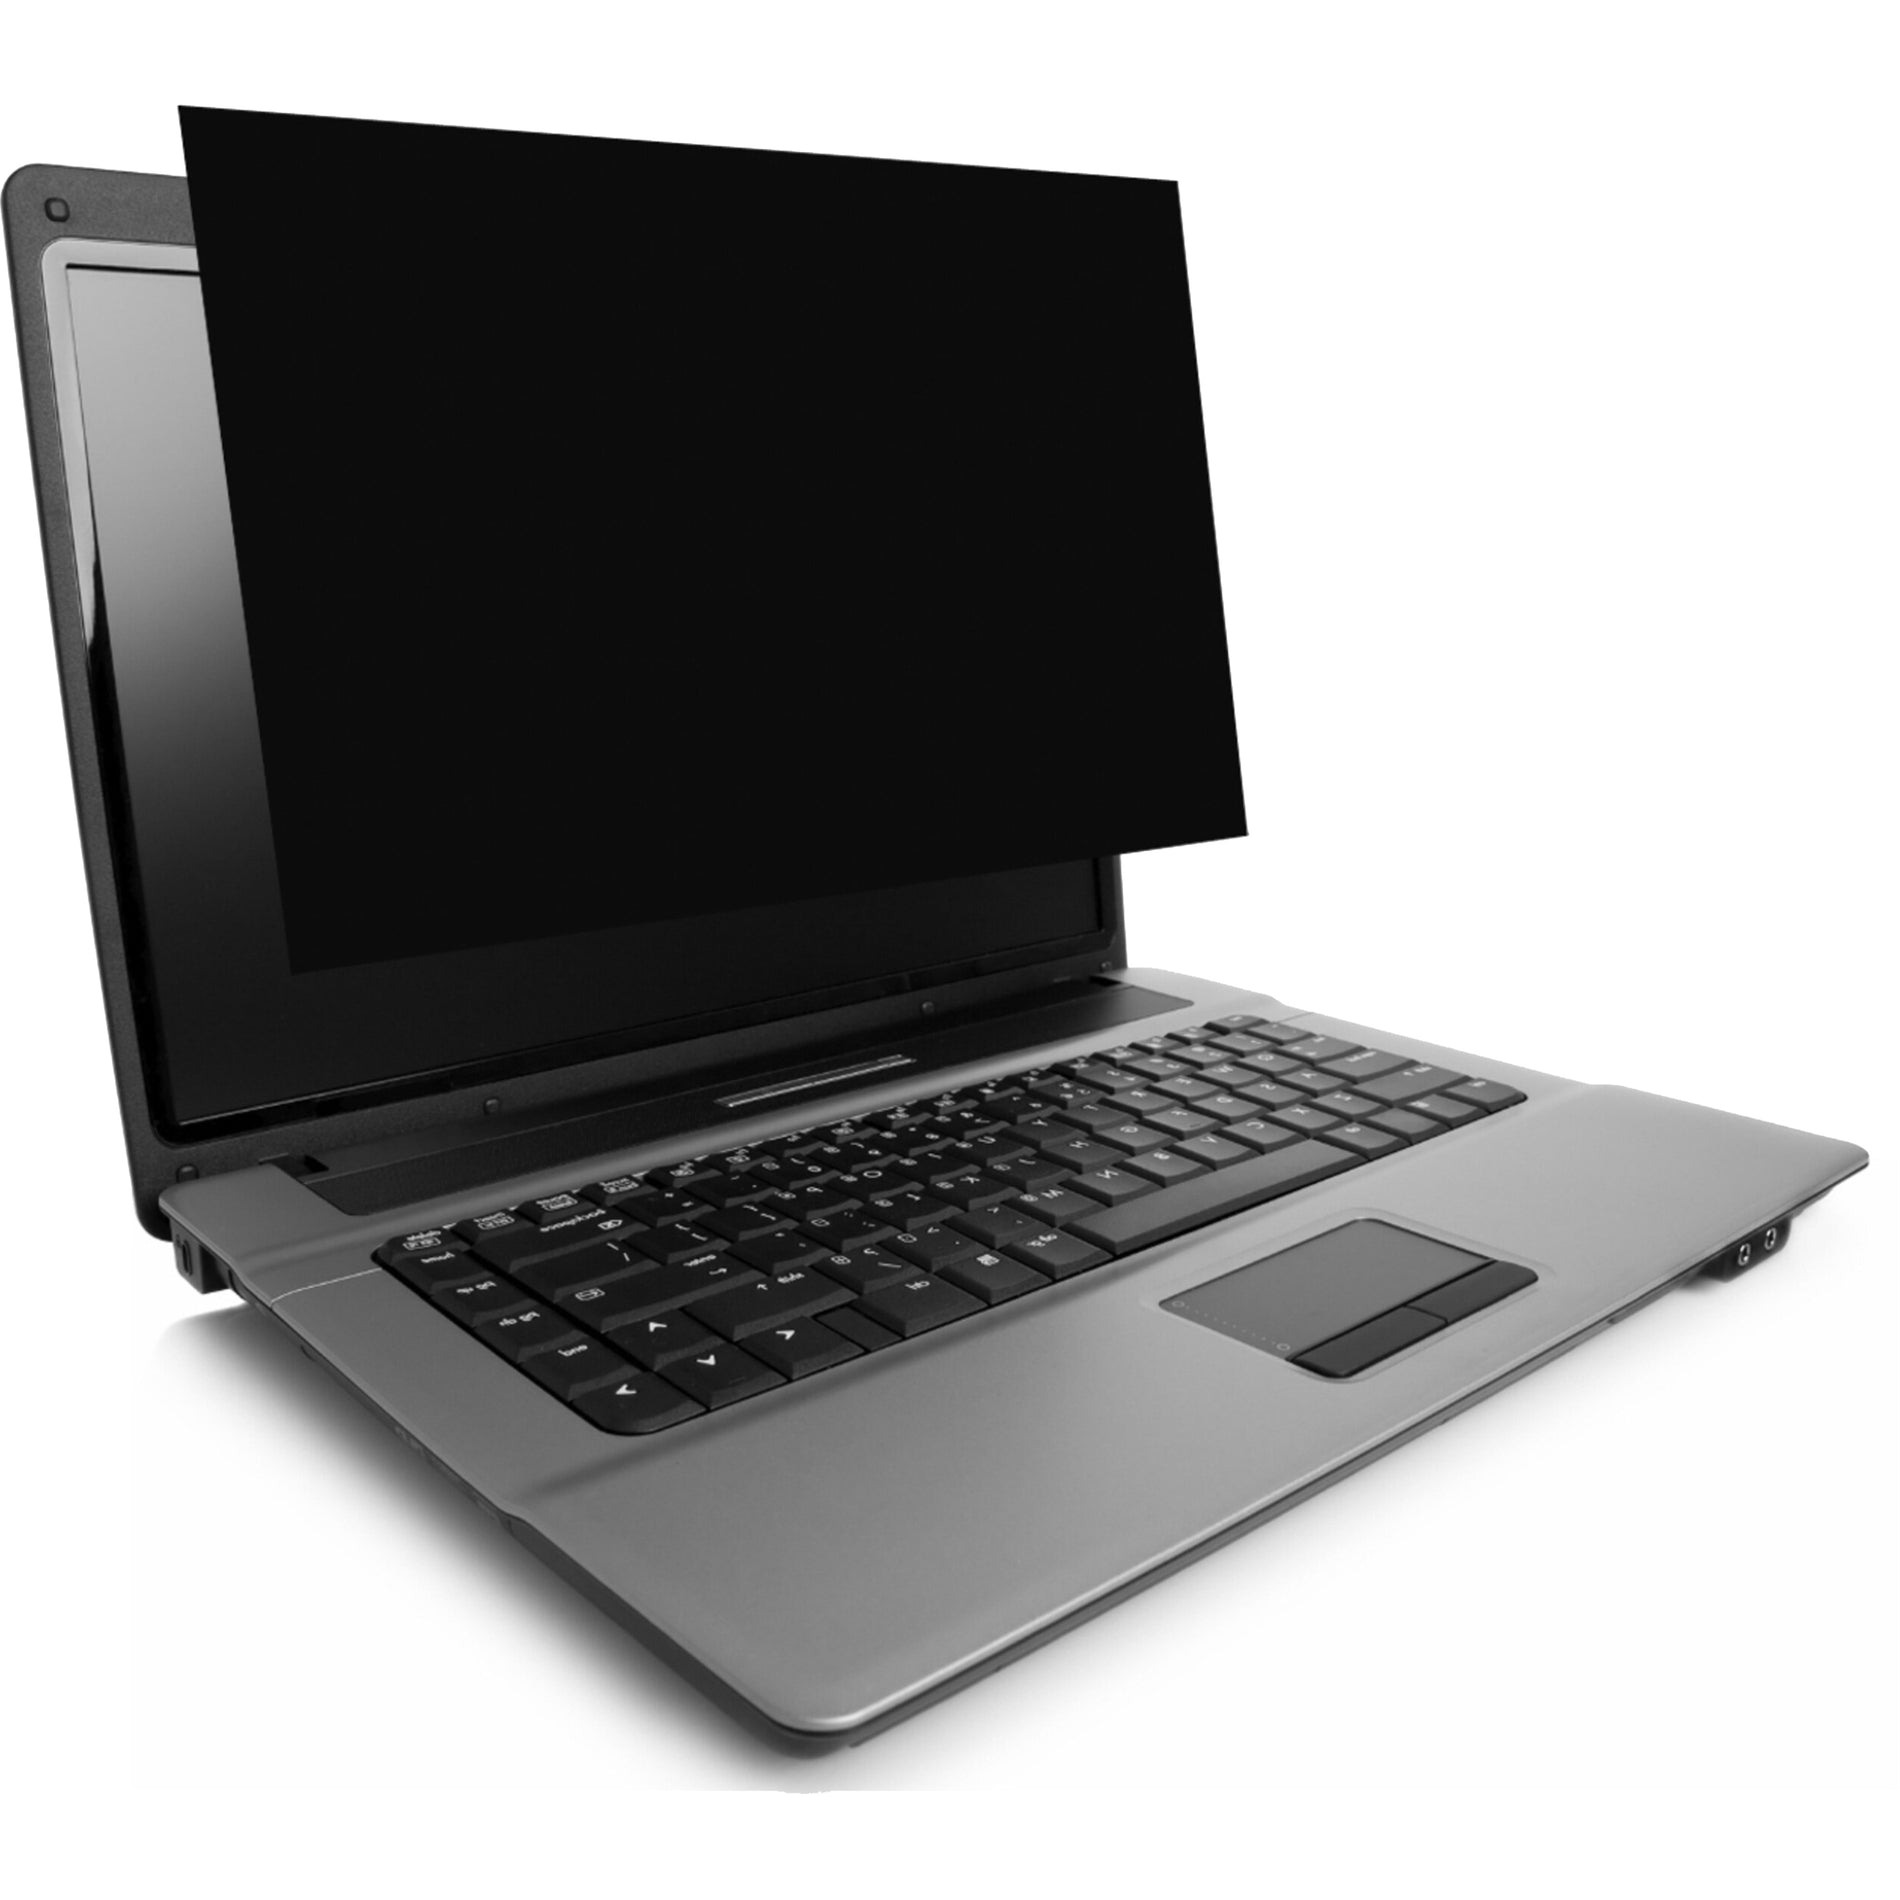 Kensington K52125WW FP160W9 Privacy Screen for Laptops (16" 16:9), Anti-Glare, Reversible, Black